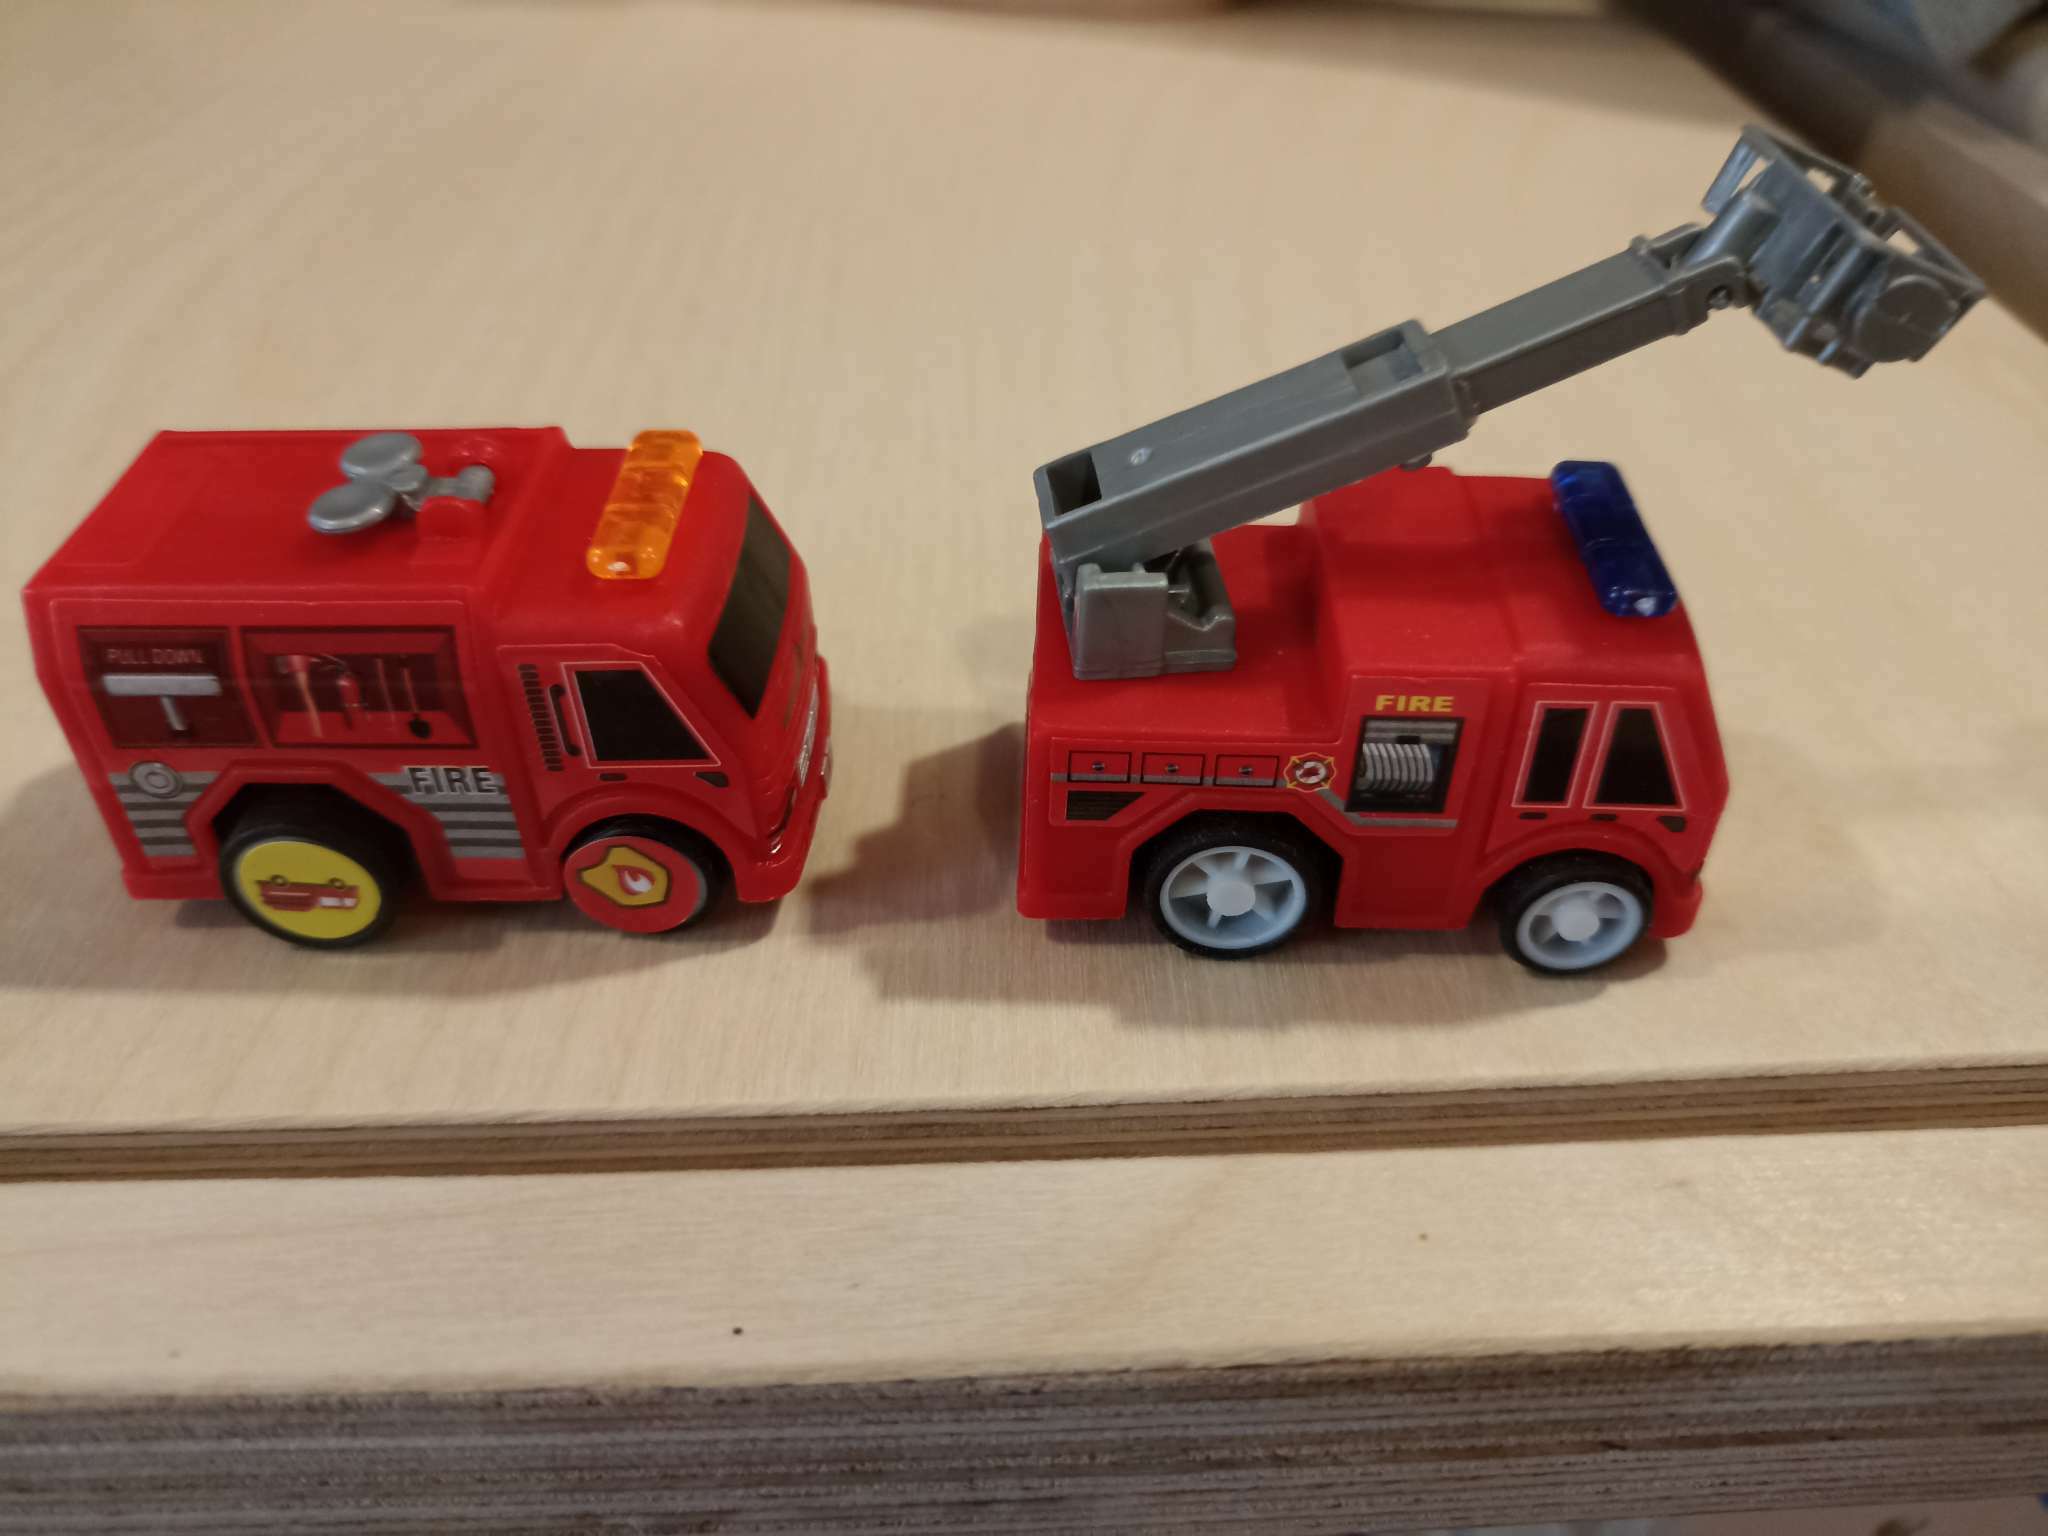 Фотография покупателя товара Игровой набор Funny Box «Пожарная техника»: карточка, фигурка, лист наклеек